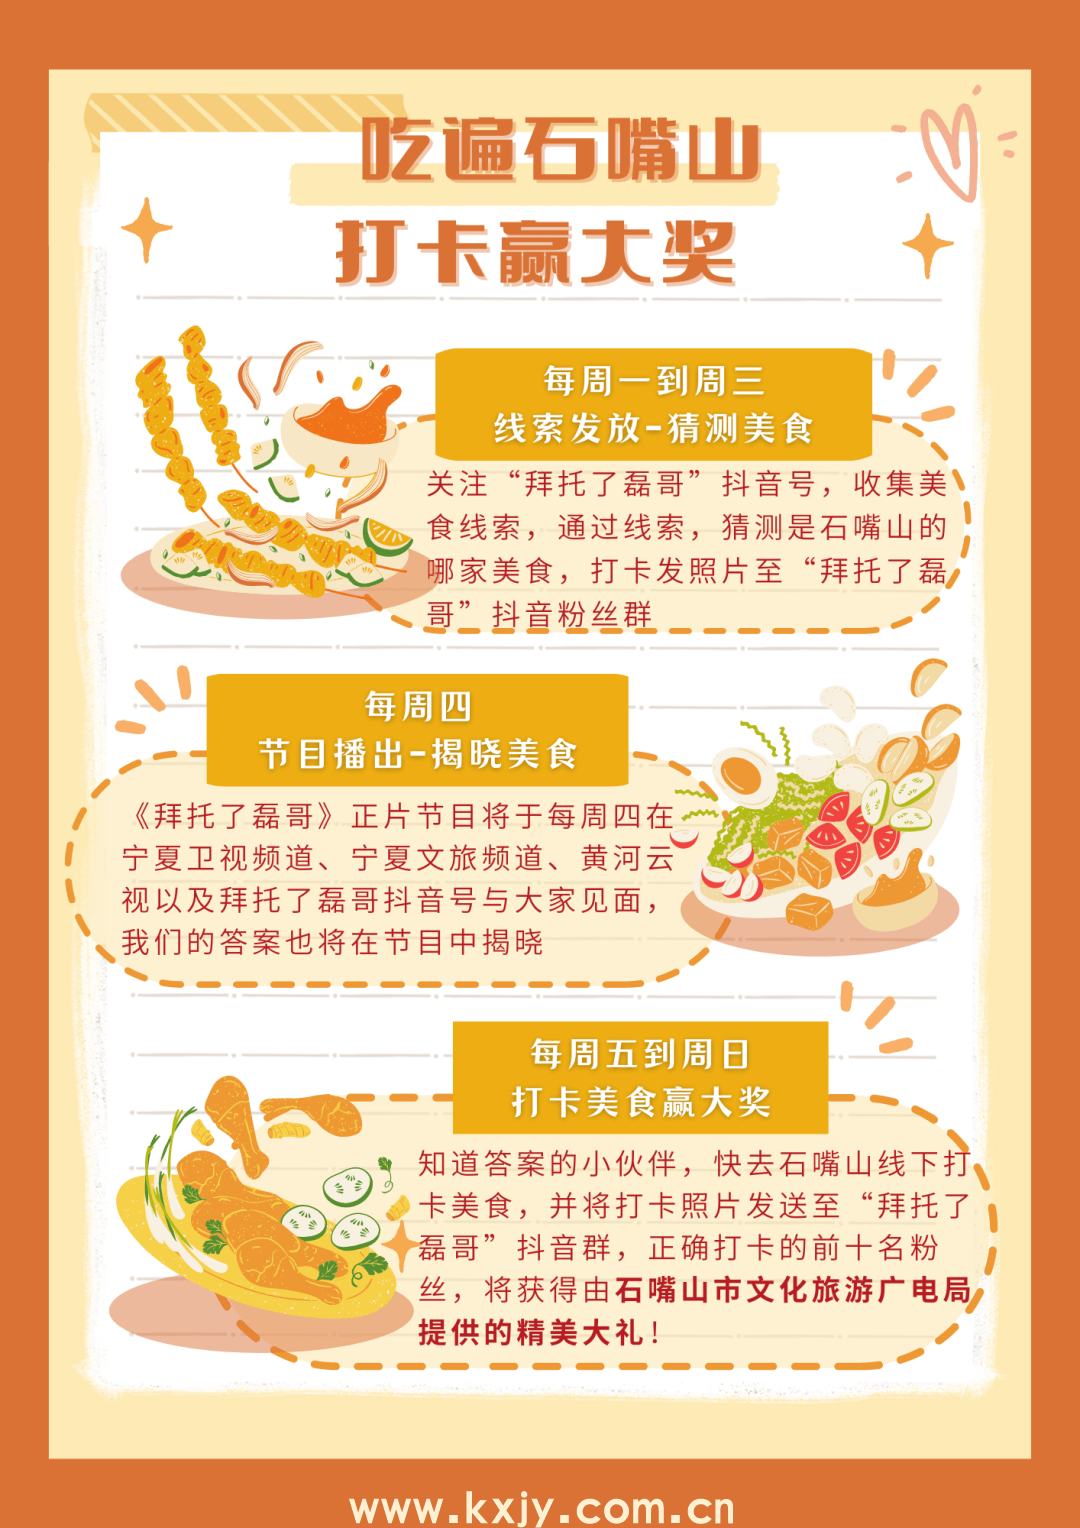 炒烩肉VS辣糊糊 哪道美食是你心中的宁夏代表？
                
                 
    (图11)